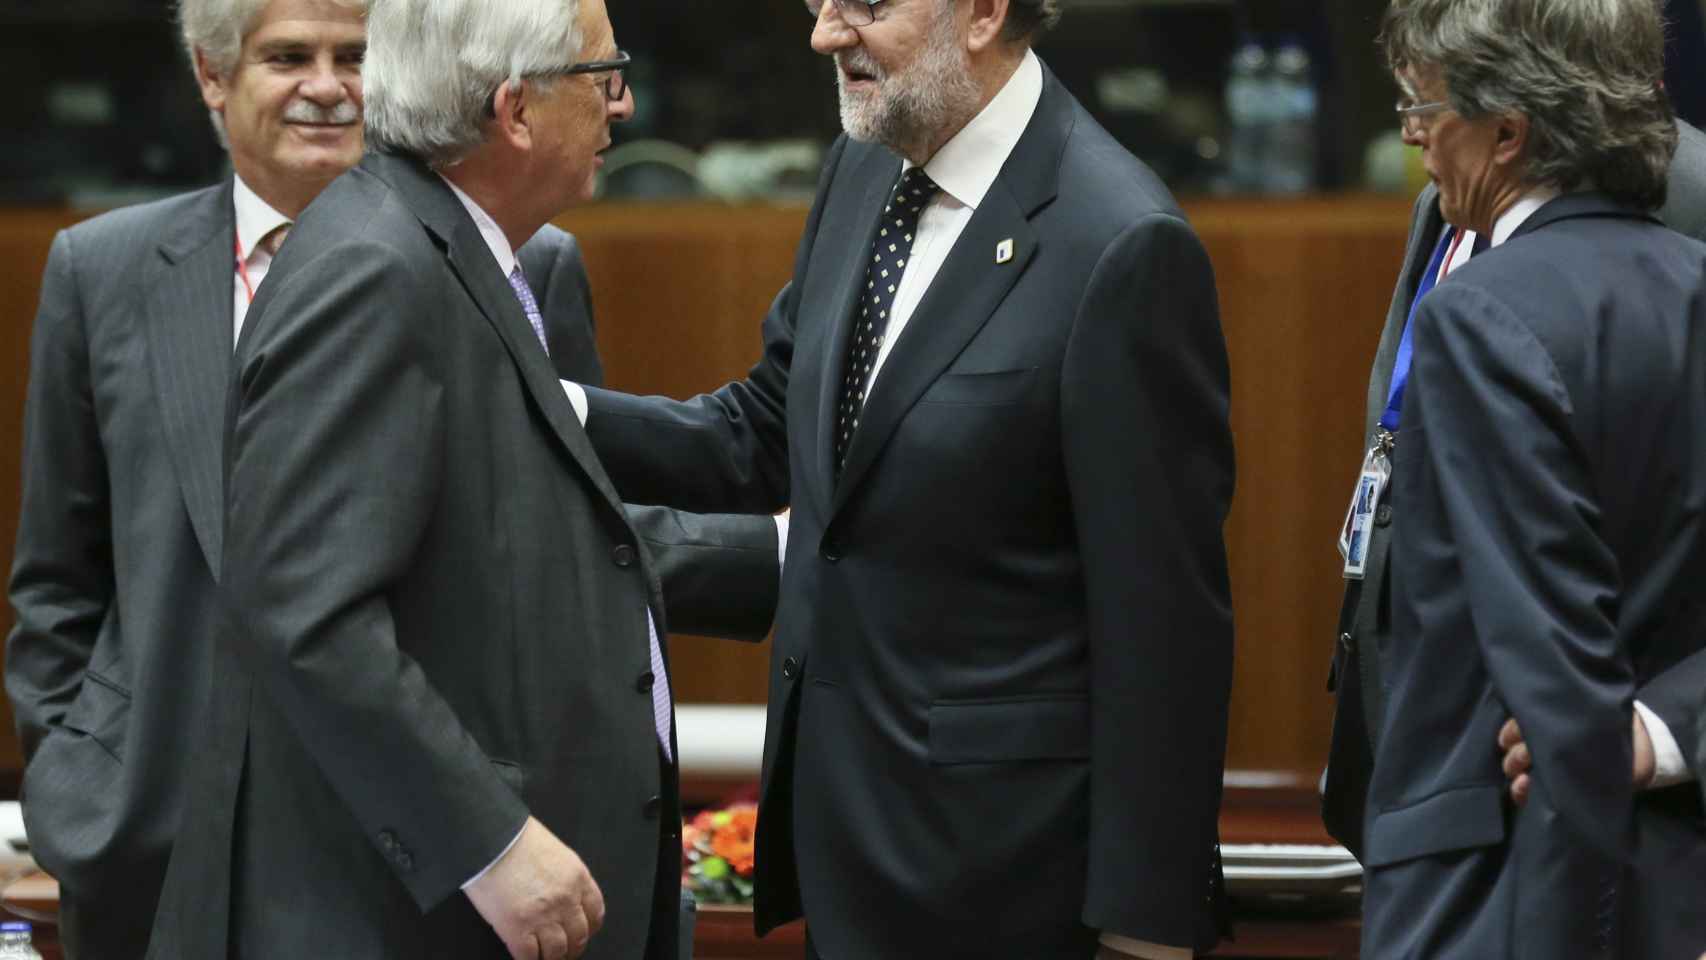 Rajoy saluda al presidente de la Comisión durante la cumbre de Bruselas